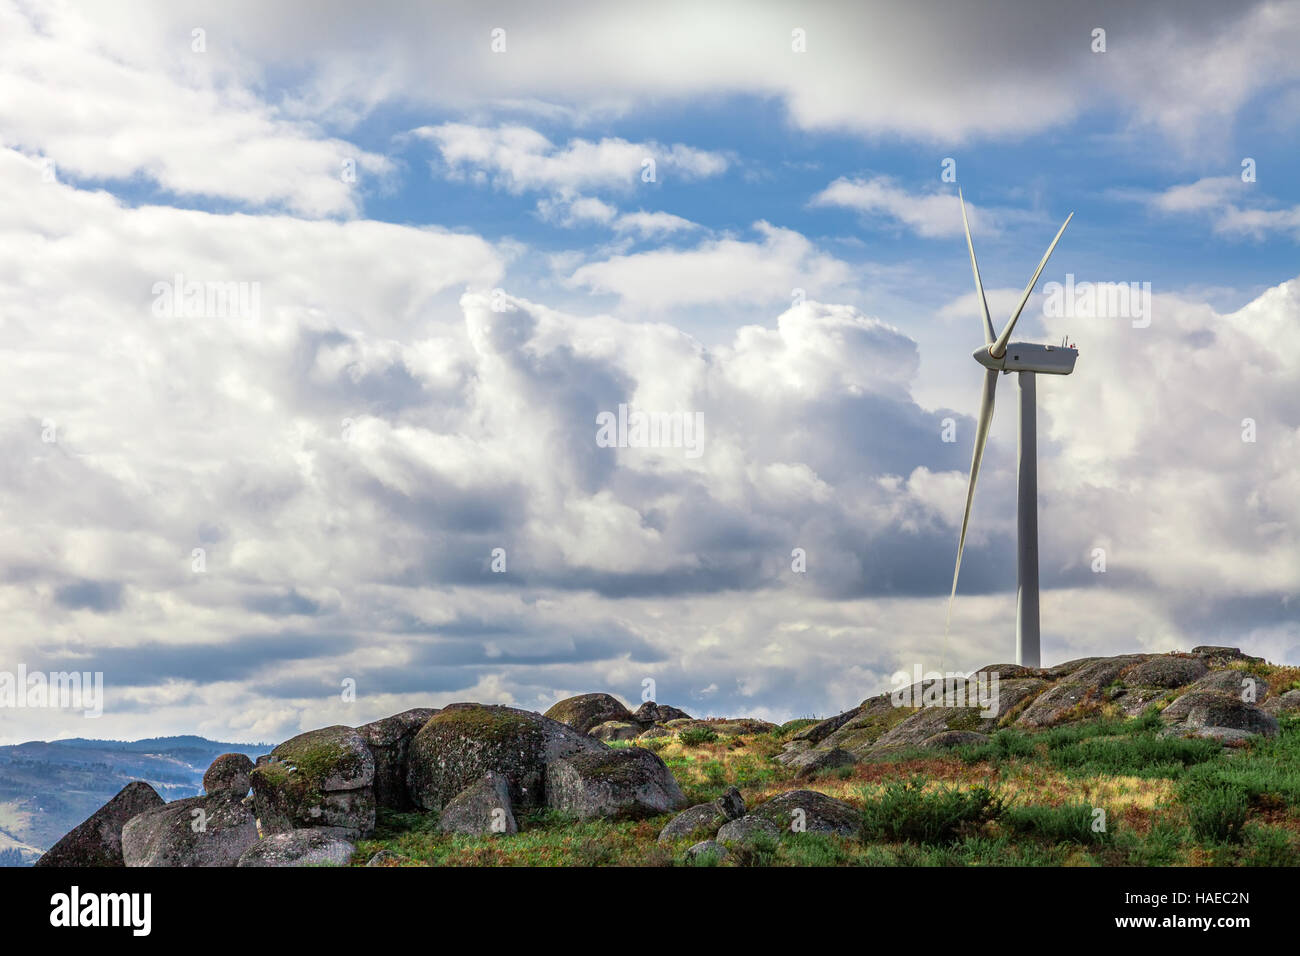 Aérogénérateur au sommet d'une colline pour la production d'énergie propre et renouvelable près de Nazaré, Portugal Banque D'Images